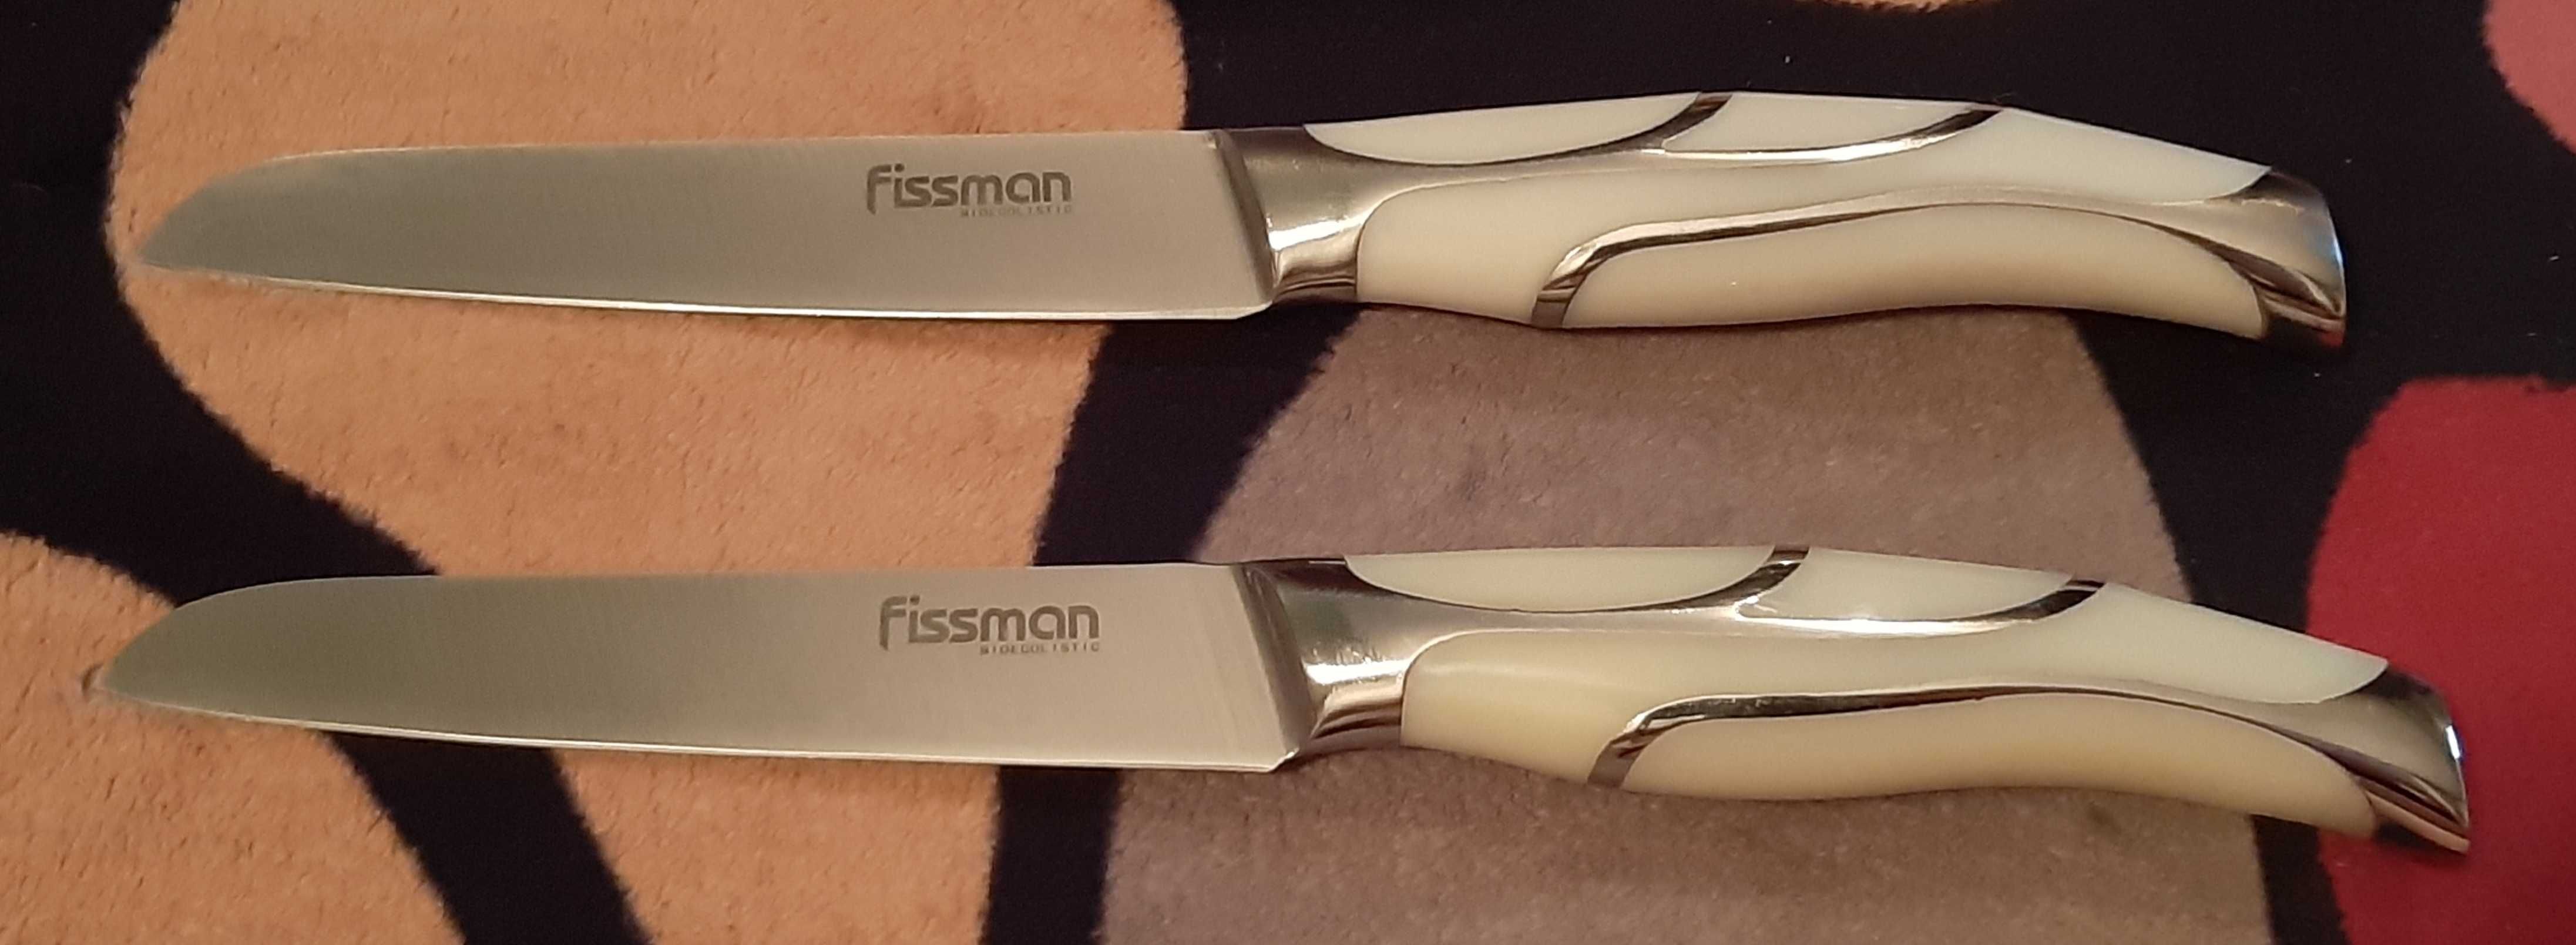 Нож FISSMAN.Кухонный поварской с декоративной рукояткой.НОВЫЙ!ДОСТАВКА